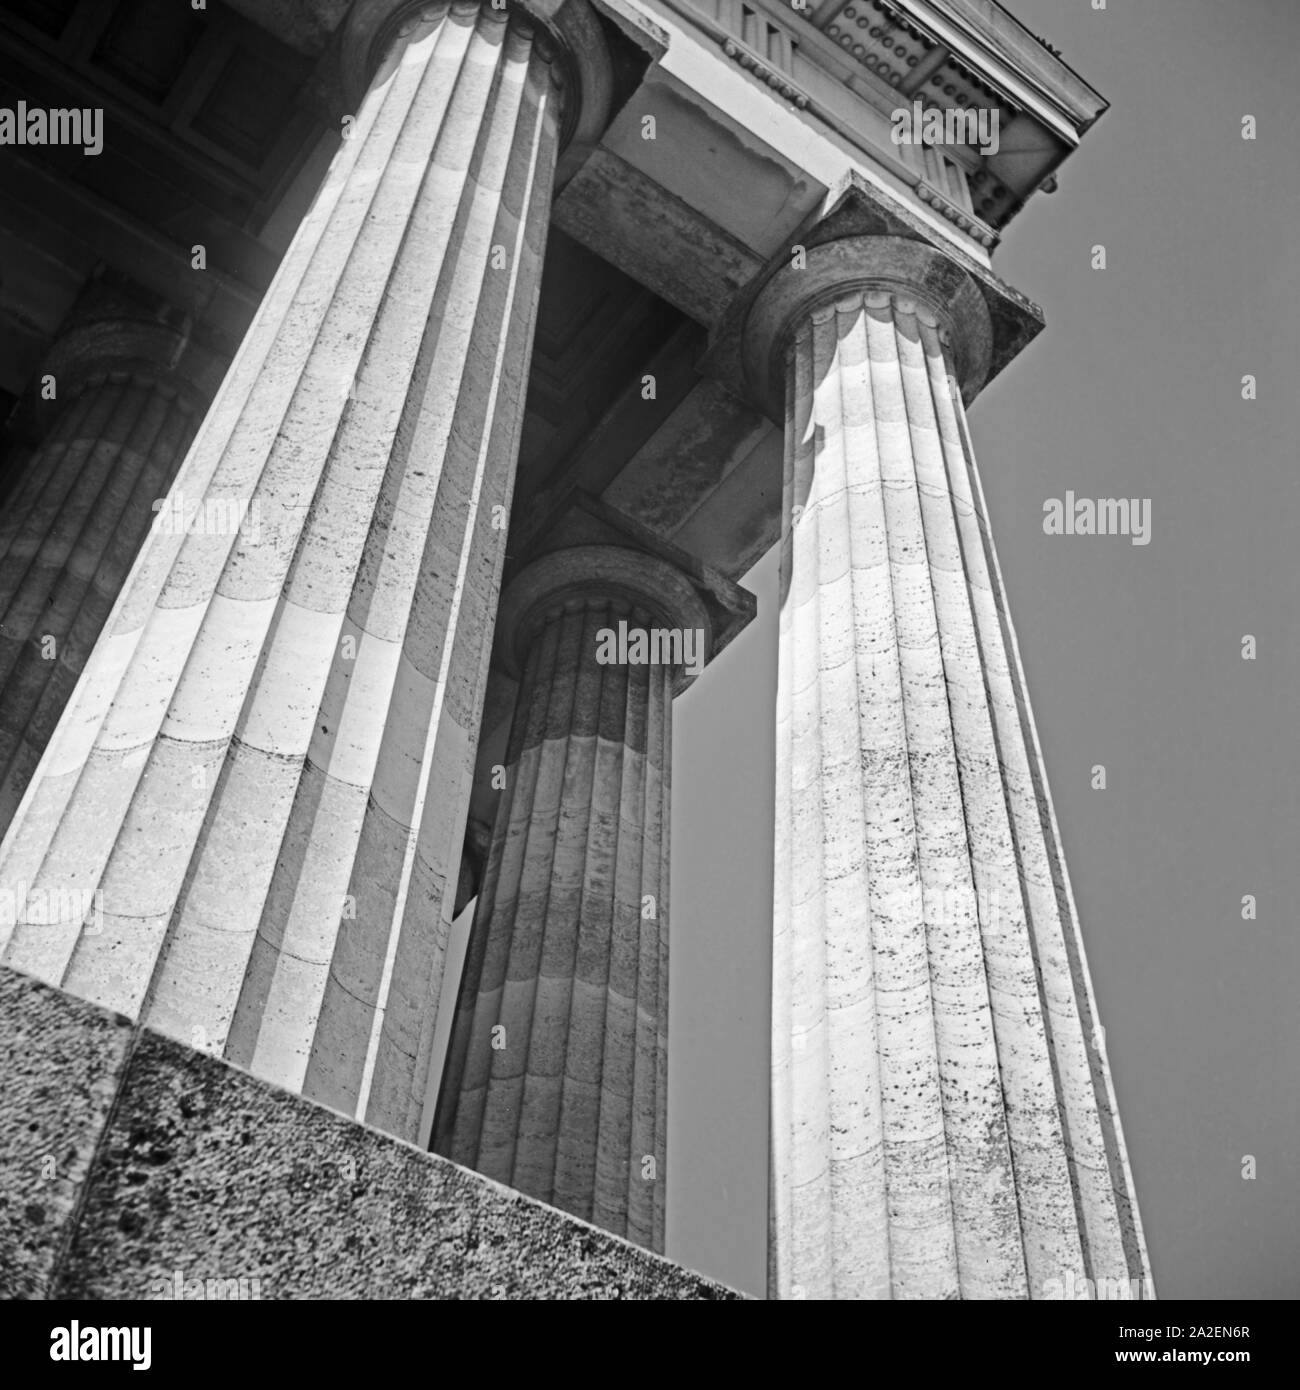 Säulen an der Walhalla bei Donaustauf, Deutschland 1930er Jahre. Columns at Walhalla memorial near Donaustauf, Germany 1930s. Stock Photo